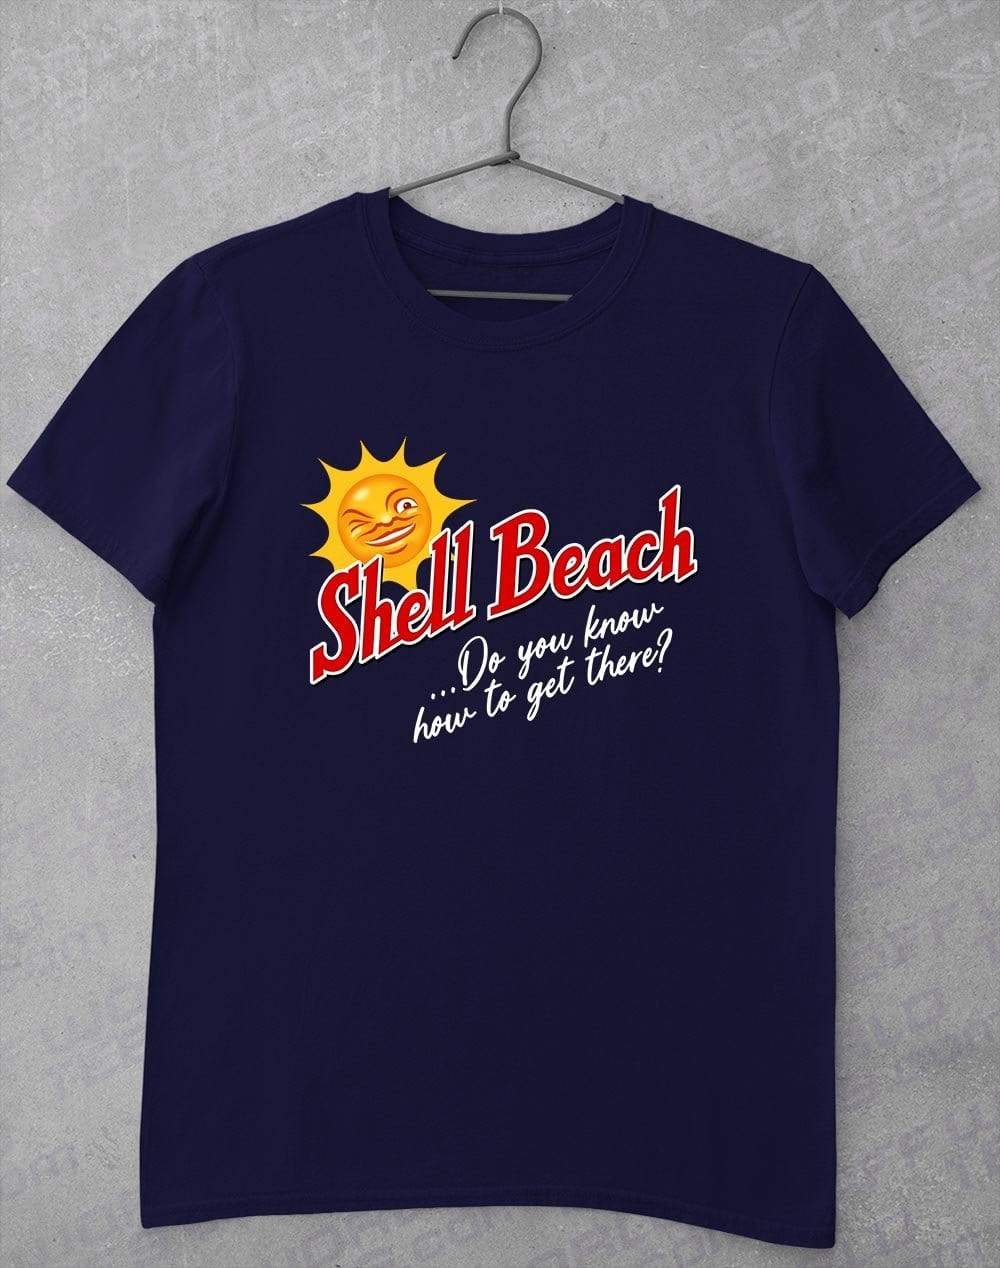 Shell Beach T-Shirt S / Navy  - Off World Tees